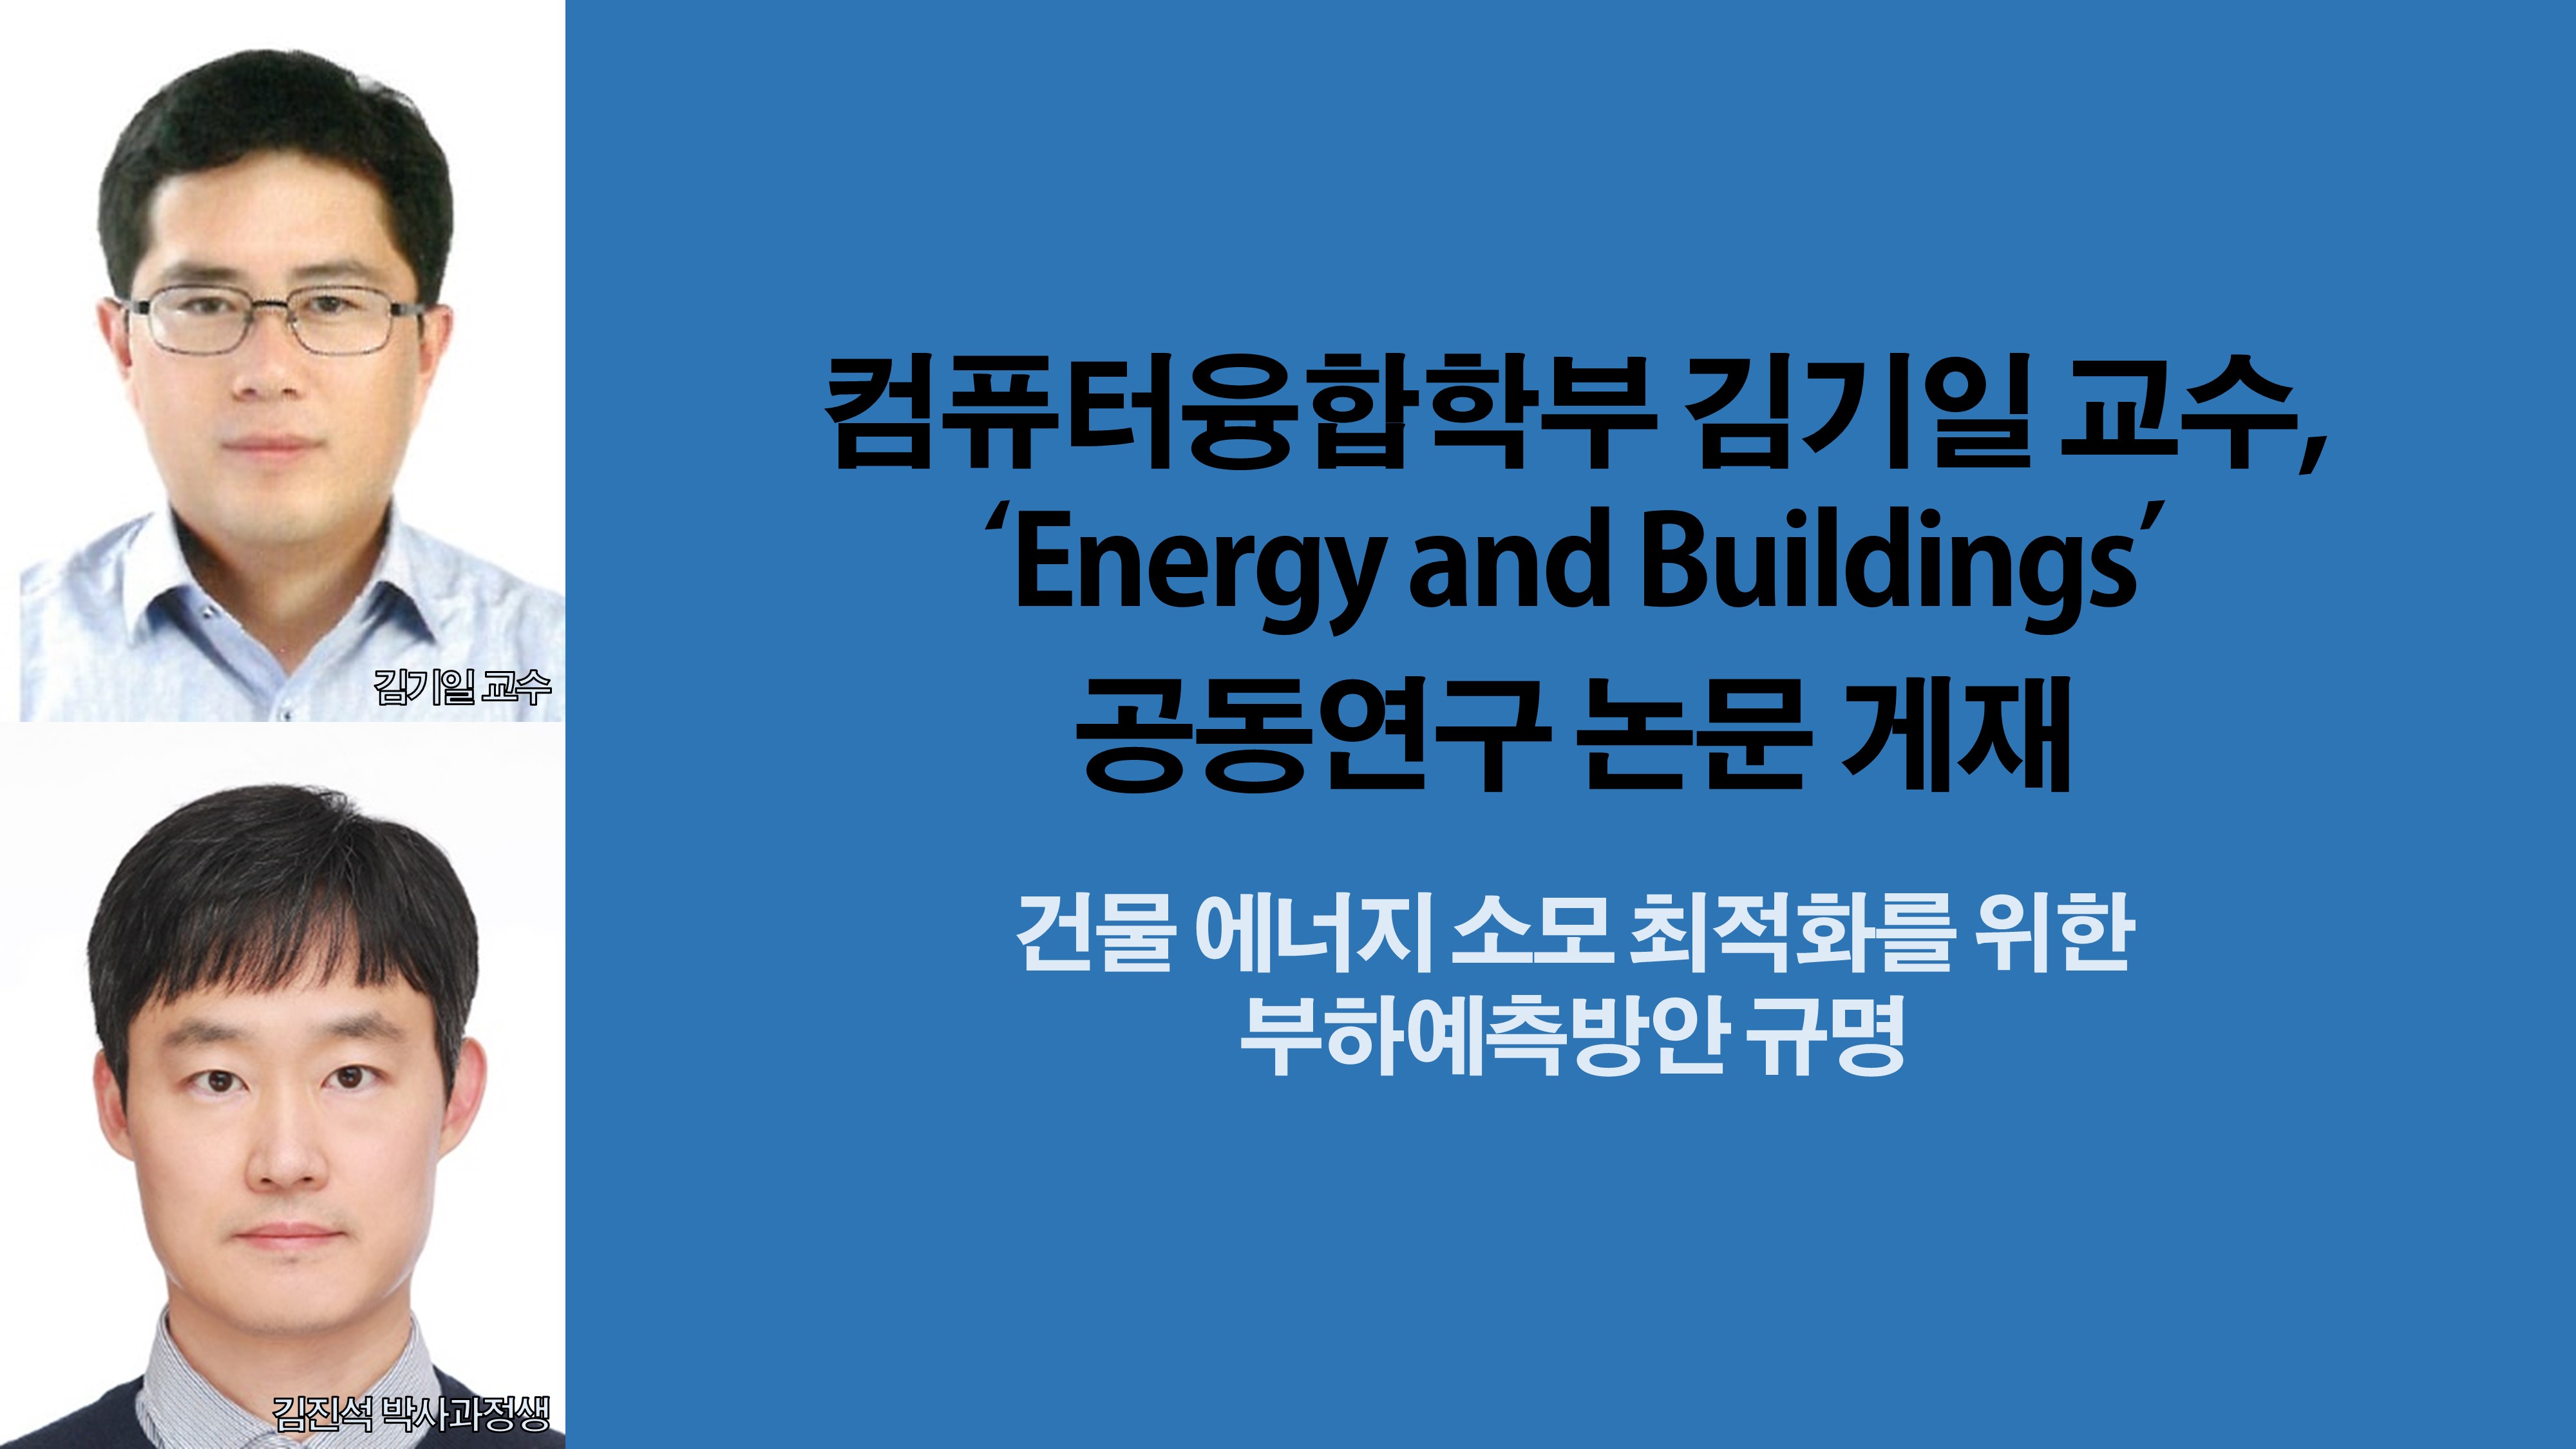 컴퓨터융합학부 김기일 교수, ‘Energy and Buildings’ 공동연구 논문 게재 사진1